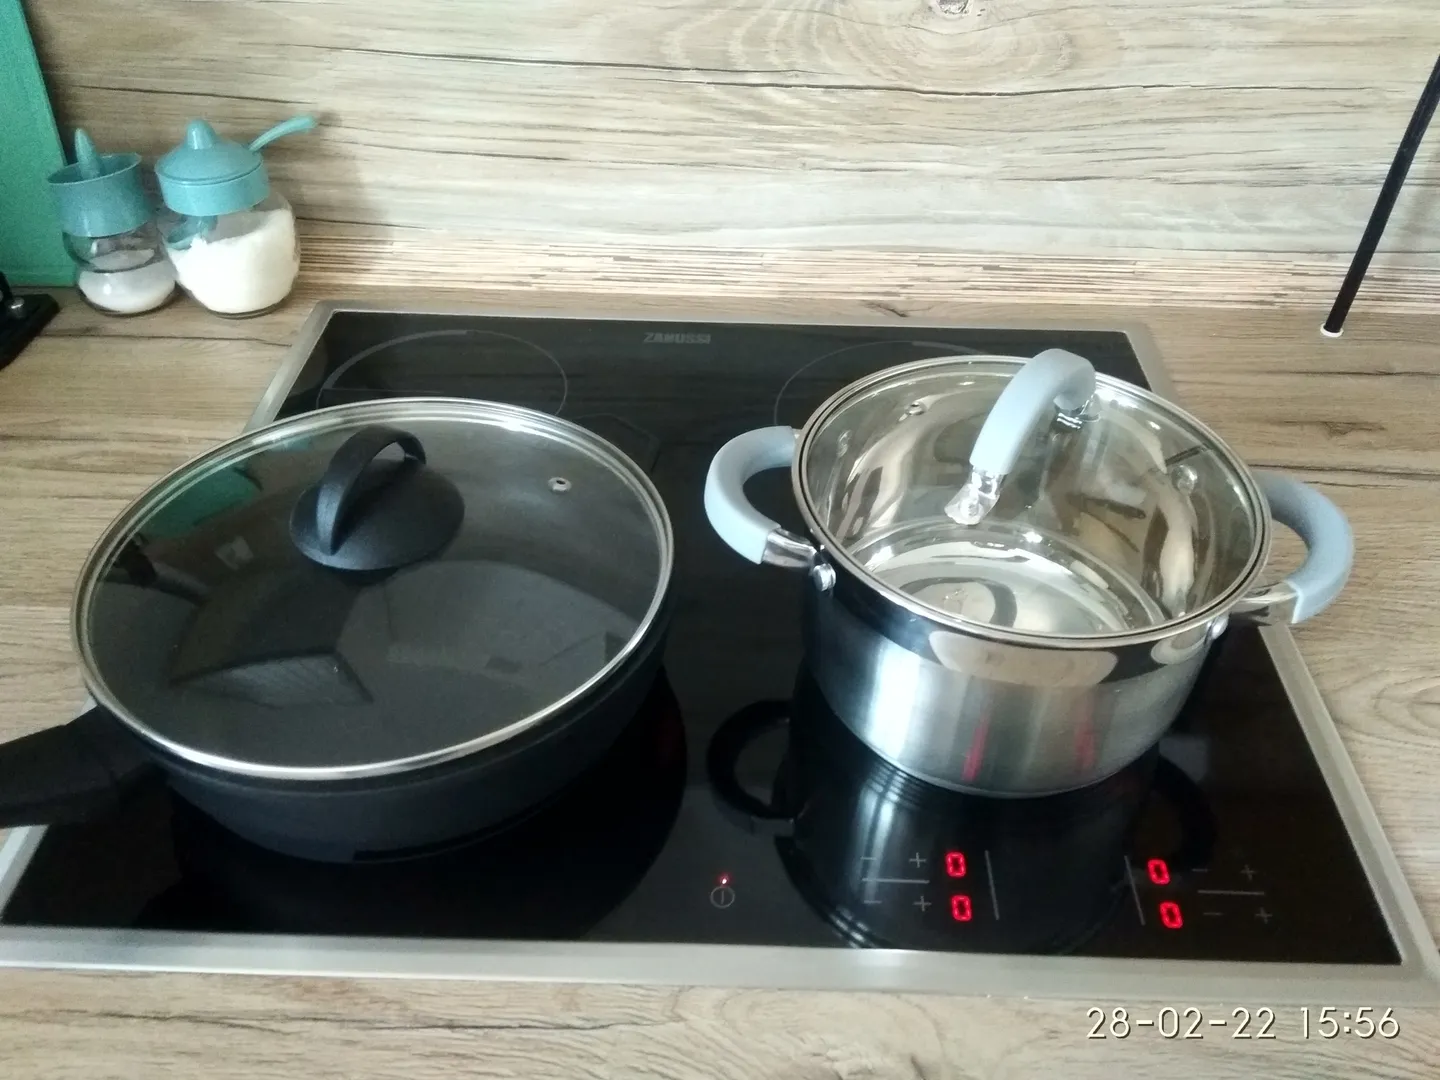 новая посуда и электрическая плита для приготовления пищи